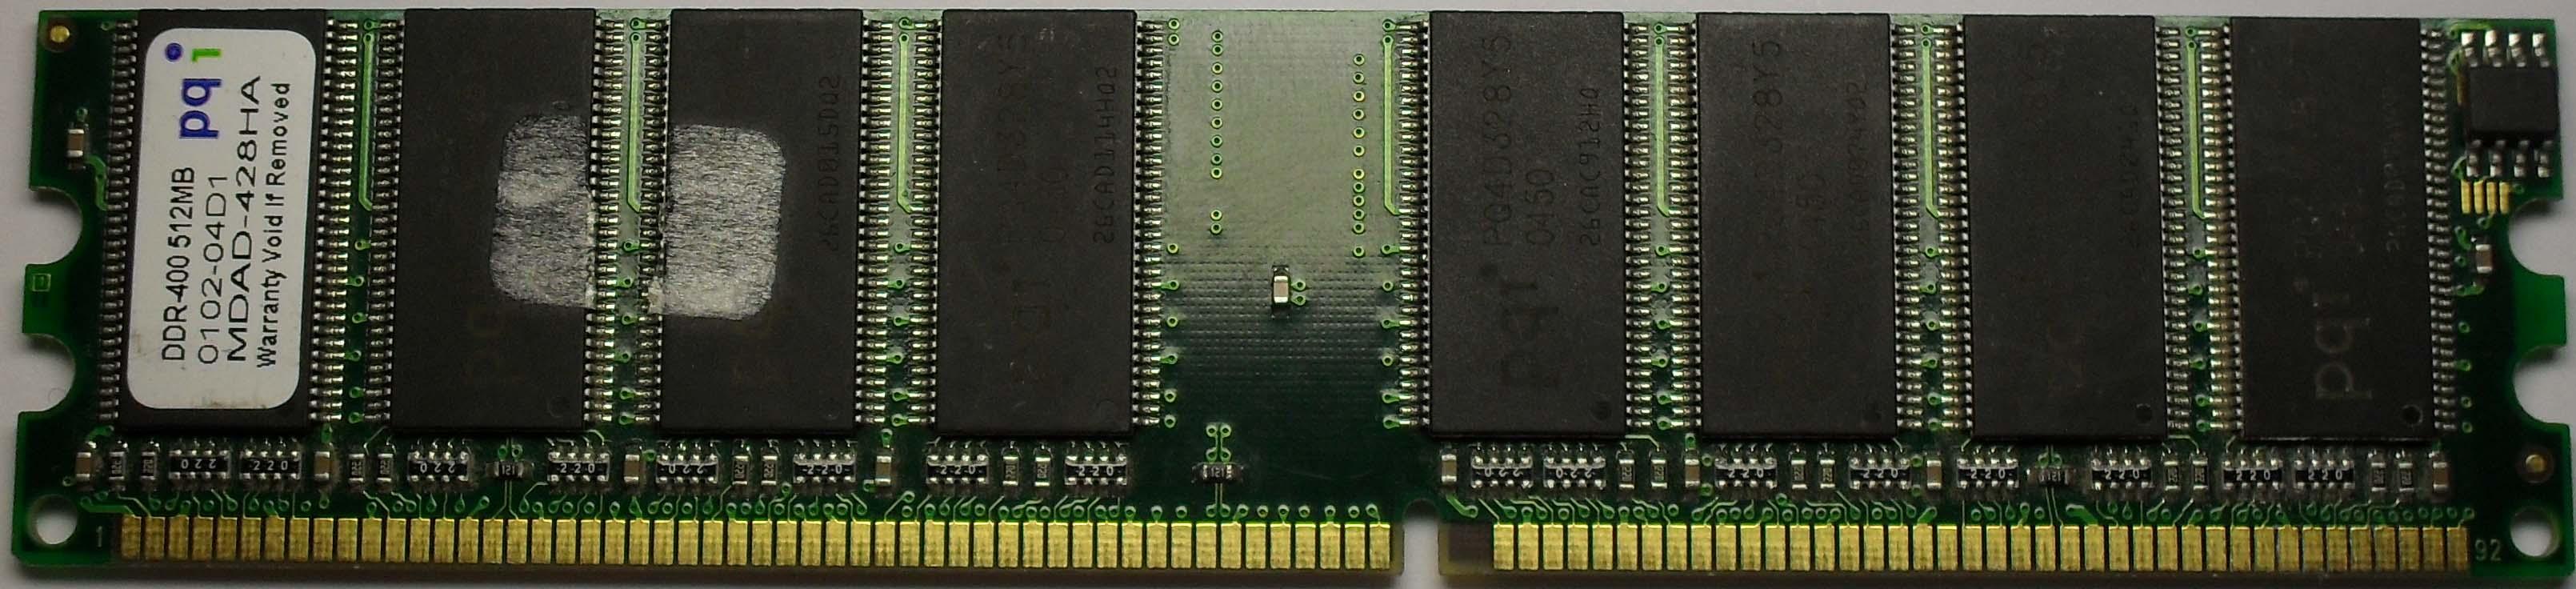 Шина памяти бит. Интегральная микросхема памяти ddr3. DIMM С двумя ключами. Модуль МИП-2и. Фото ячеек кристалла DDR SDRAM.